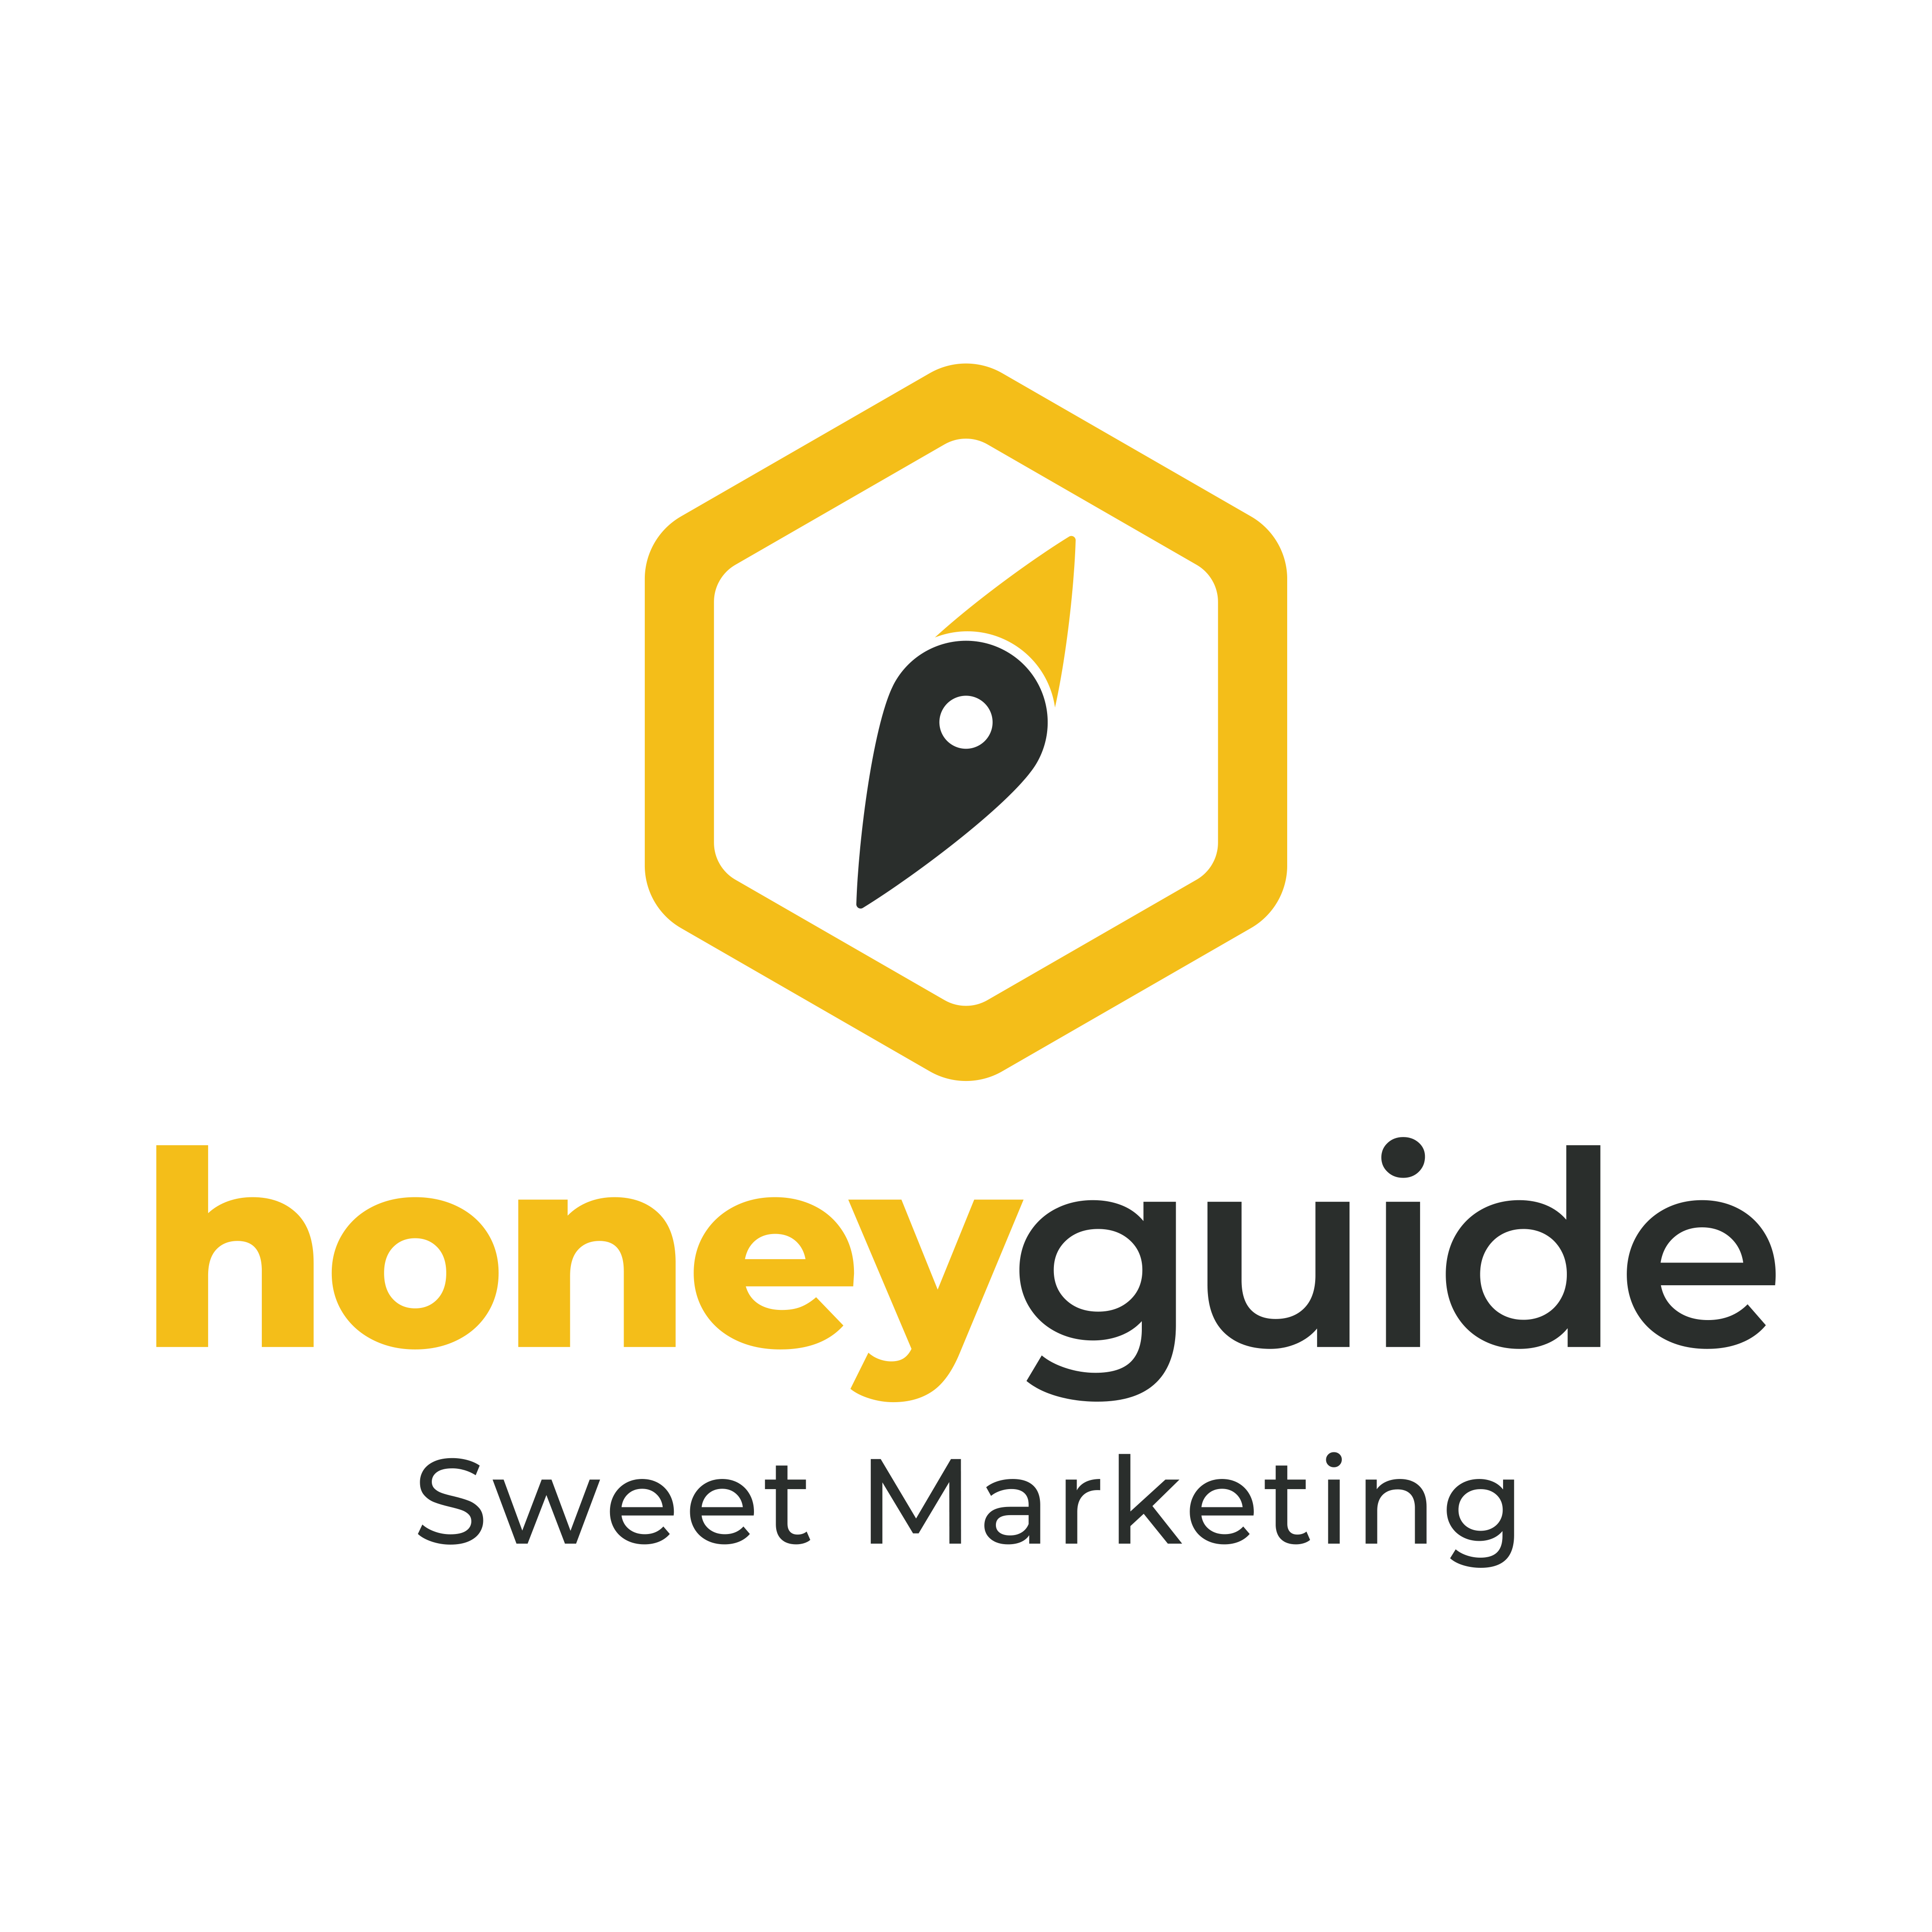 Honeyguide_Logo Variations-1